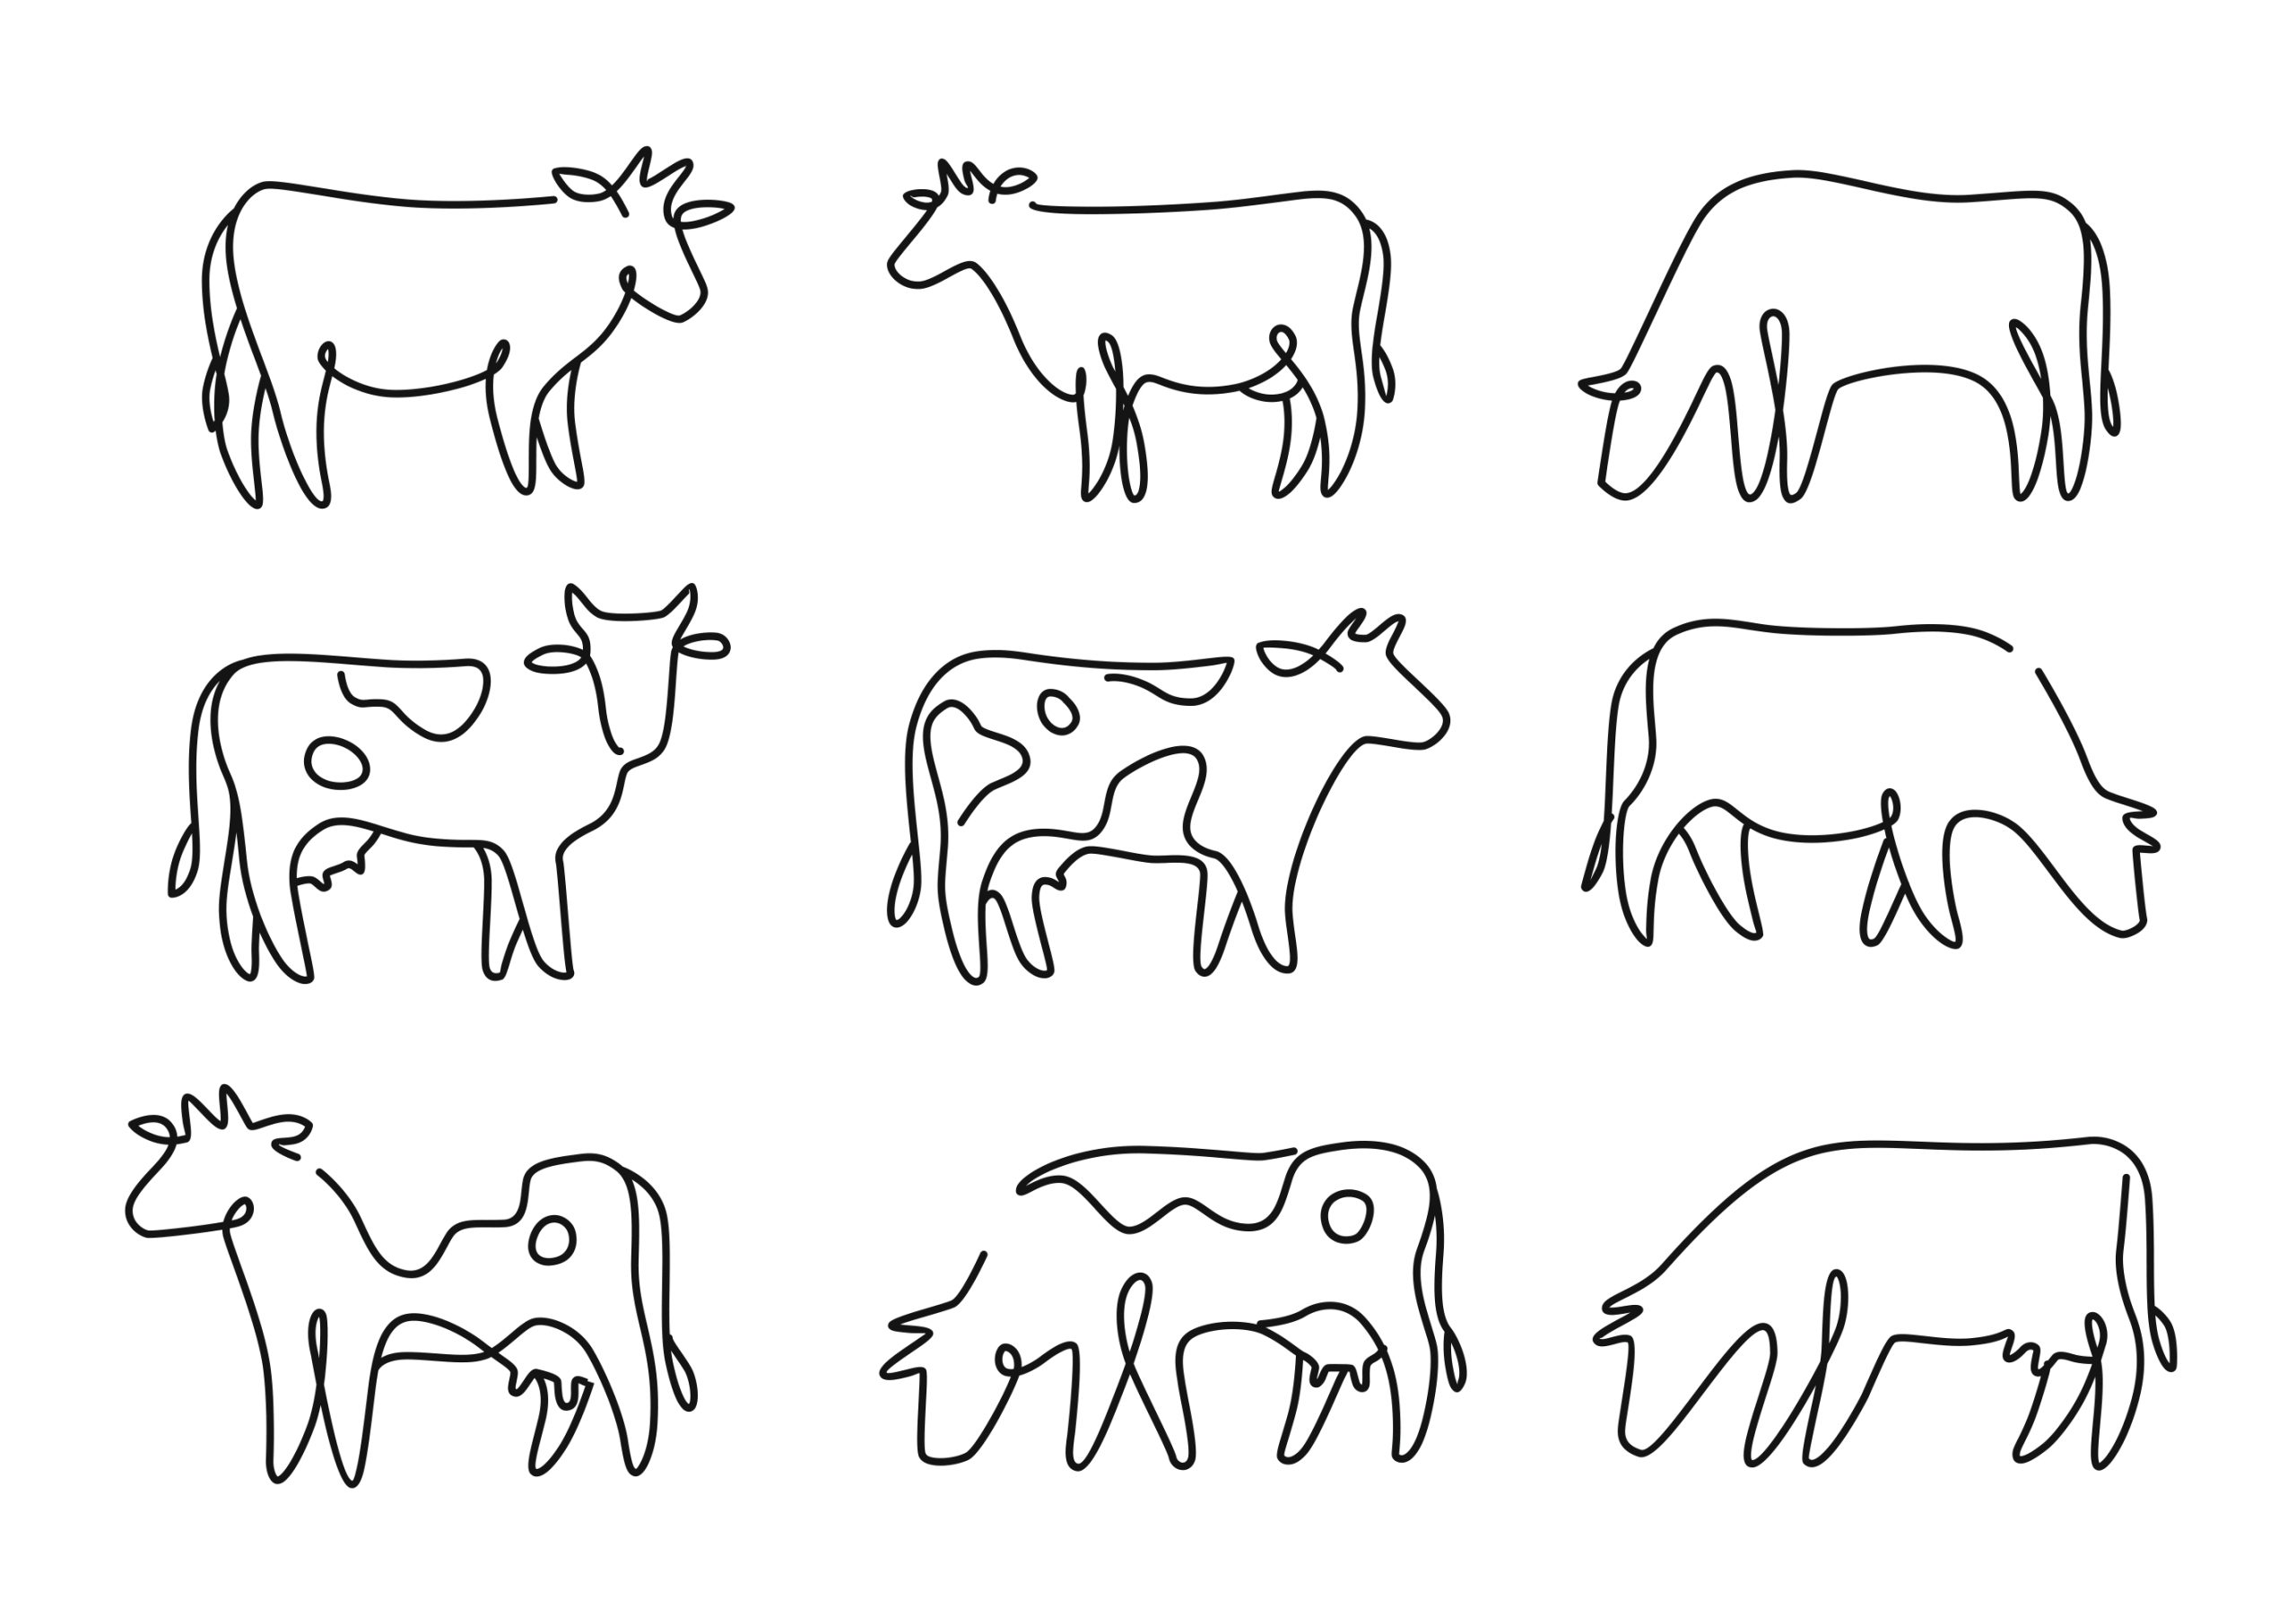 Vacas no pasto